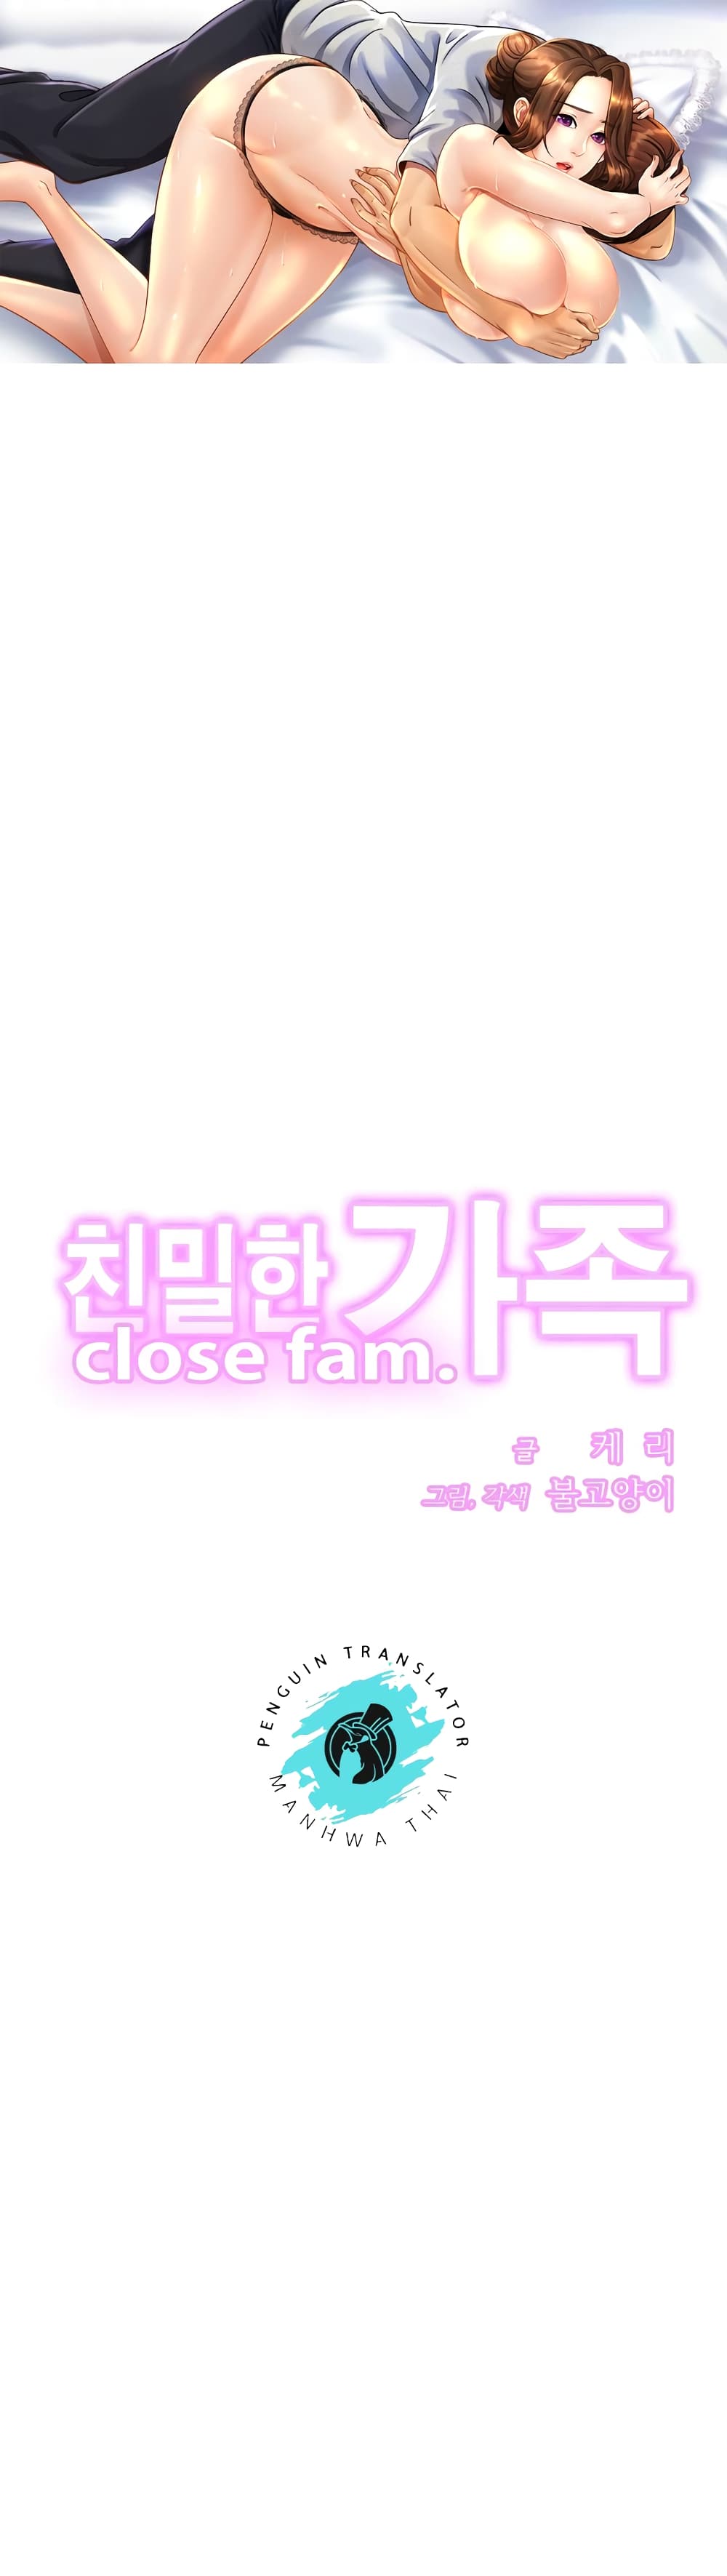 Close Family 33 (1)